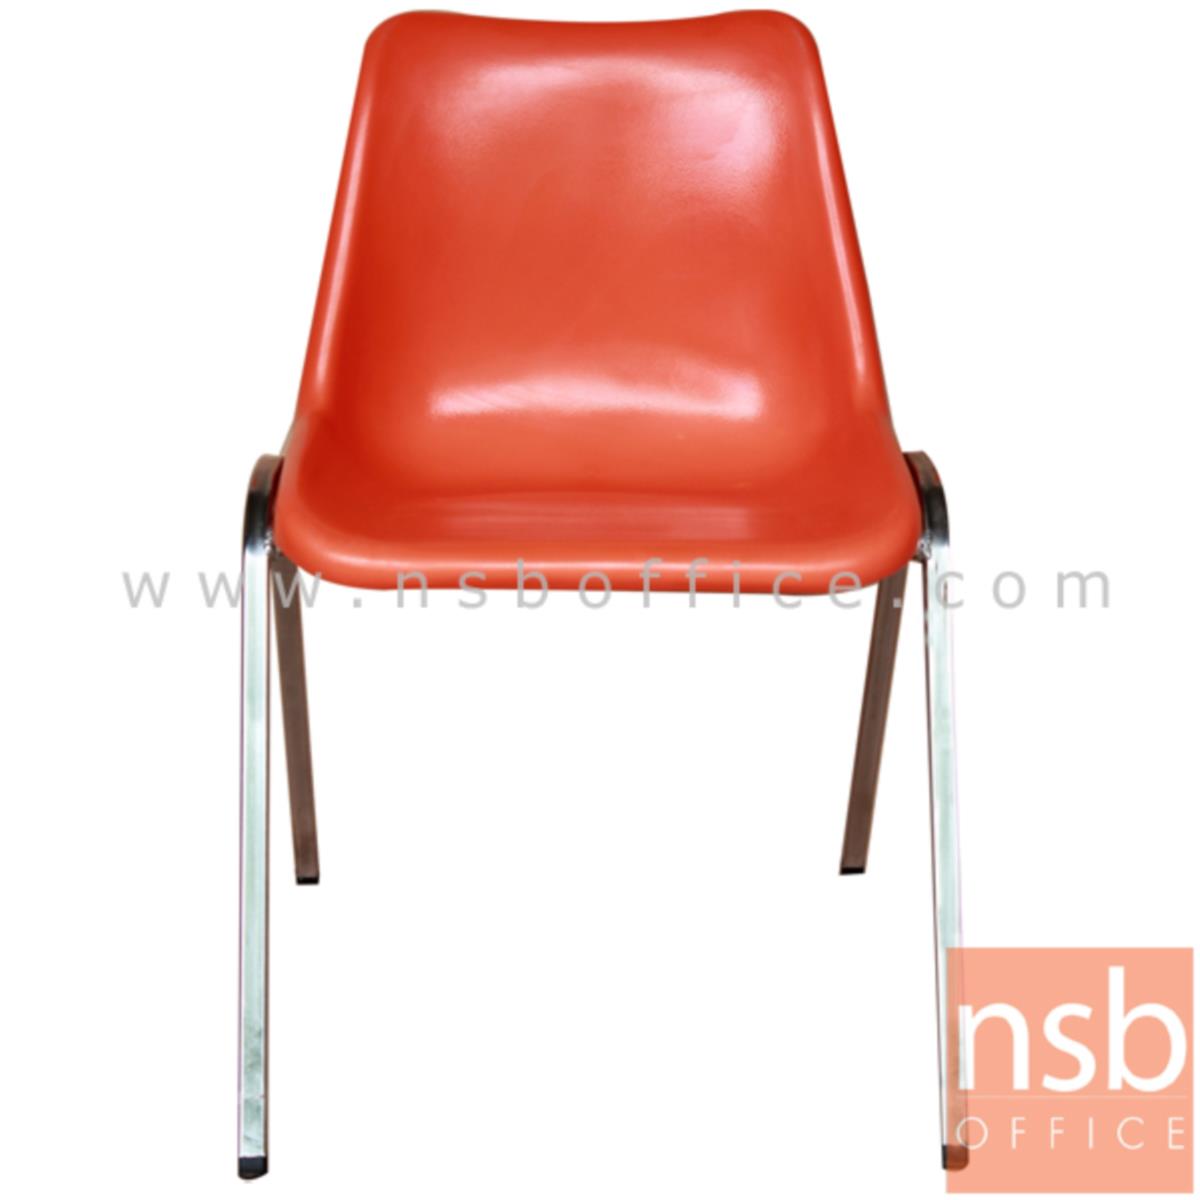 B05A029:เก้าอี้อเนกประสงค์เฟรมโพลี่ รุ่น Portia (พอเทีย)  ขาเหล็กชุบโครเมี่ยม